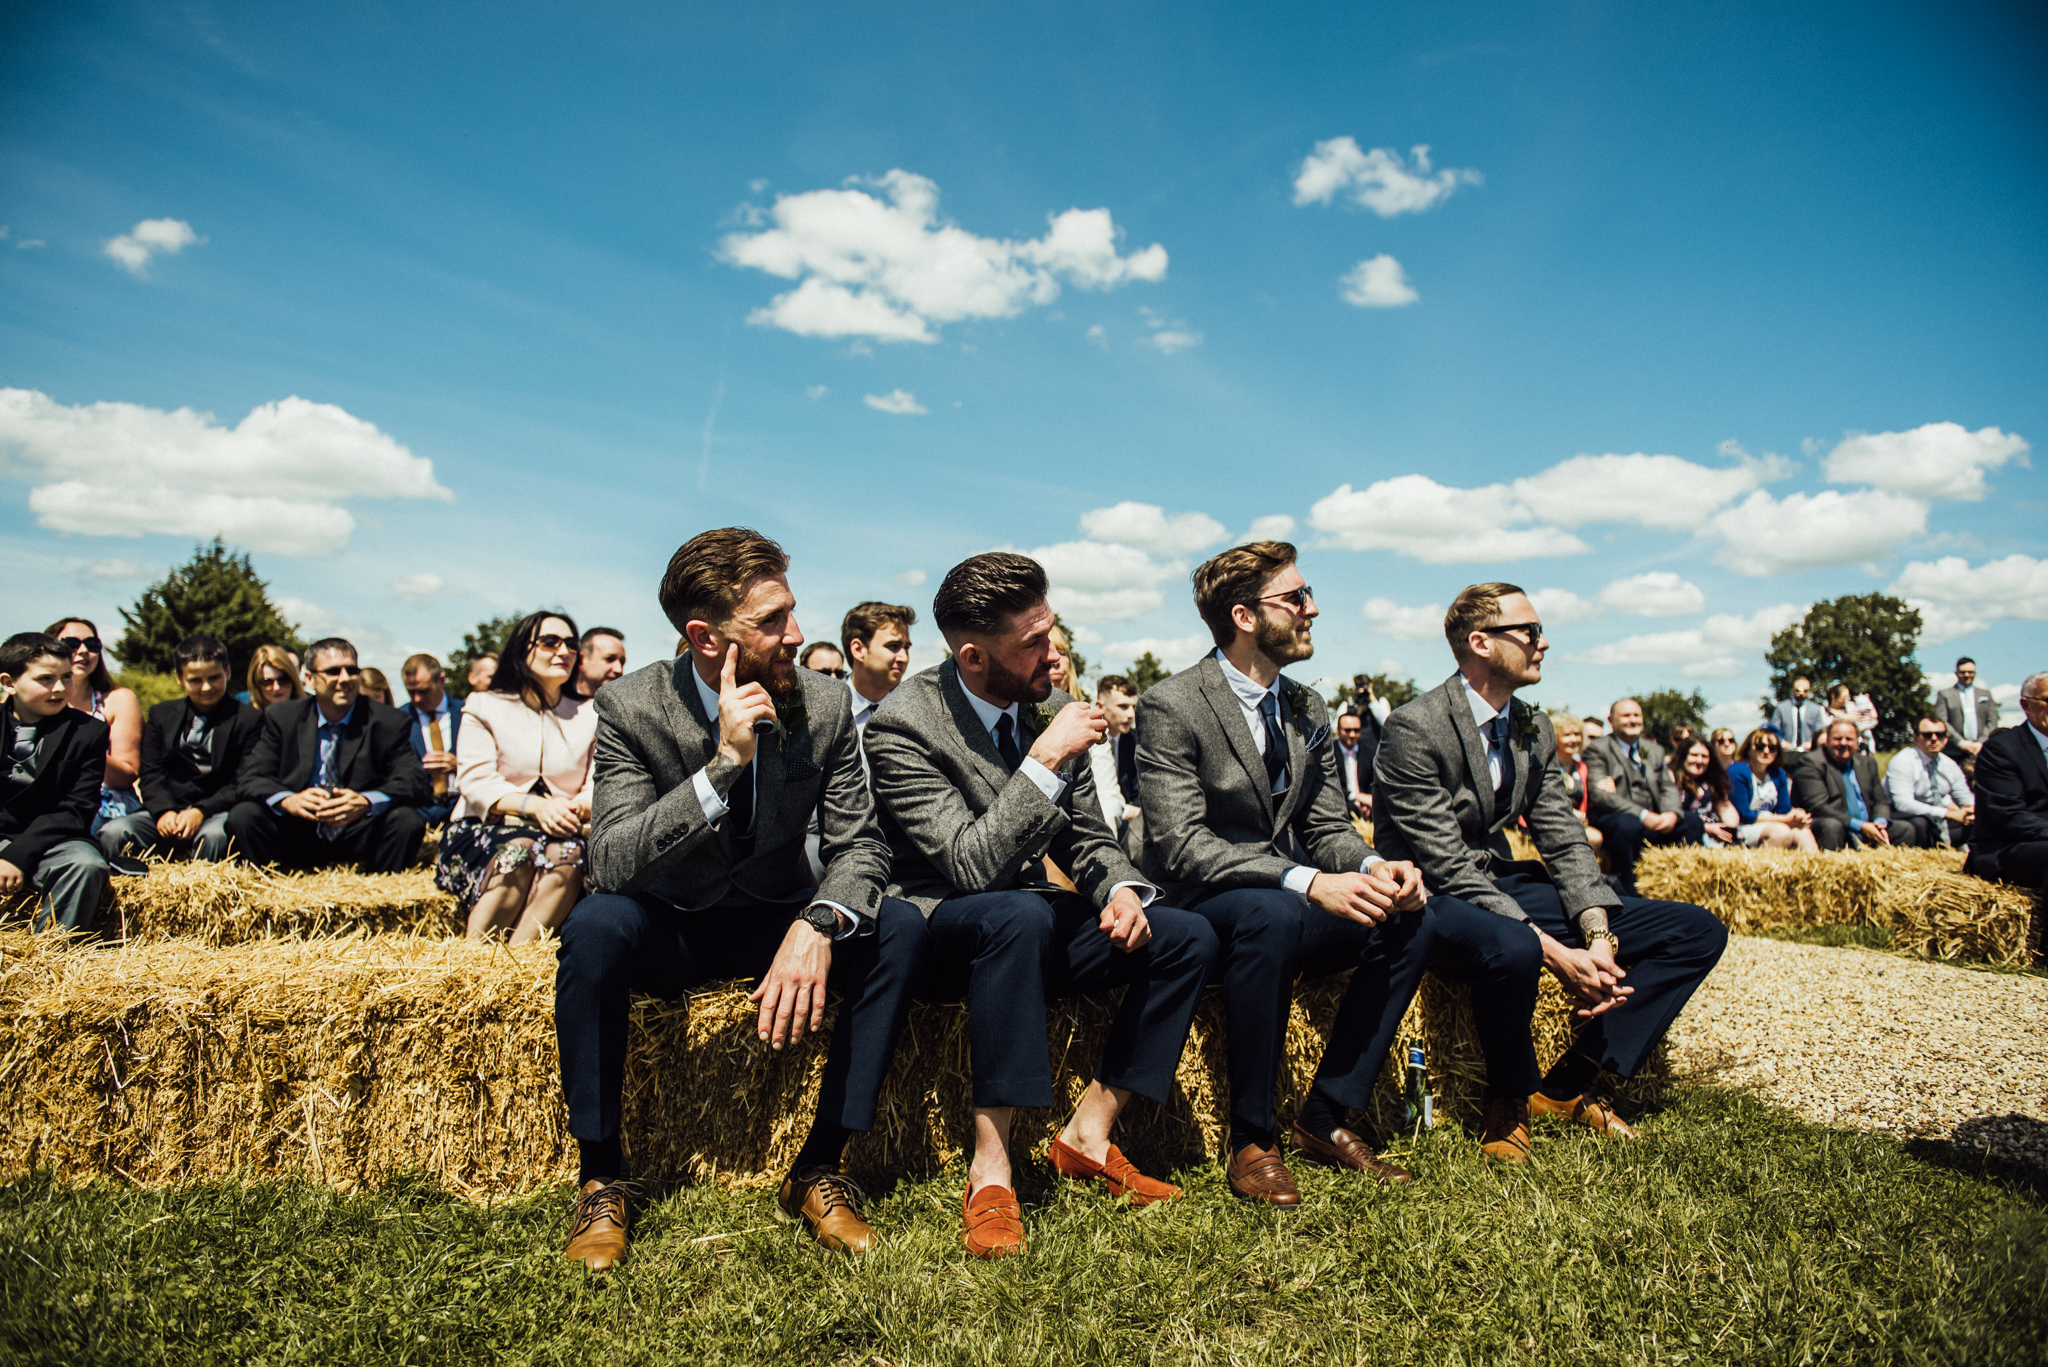 tipi wedding, northamptonshire wedding, long furlong farm wedding, fun wedding, colourful wedding, michelle wood photographer